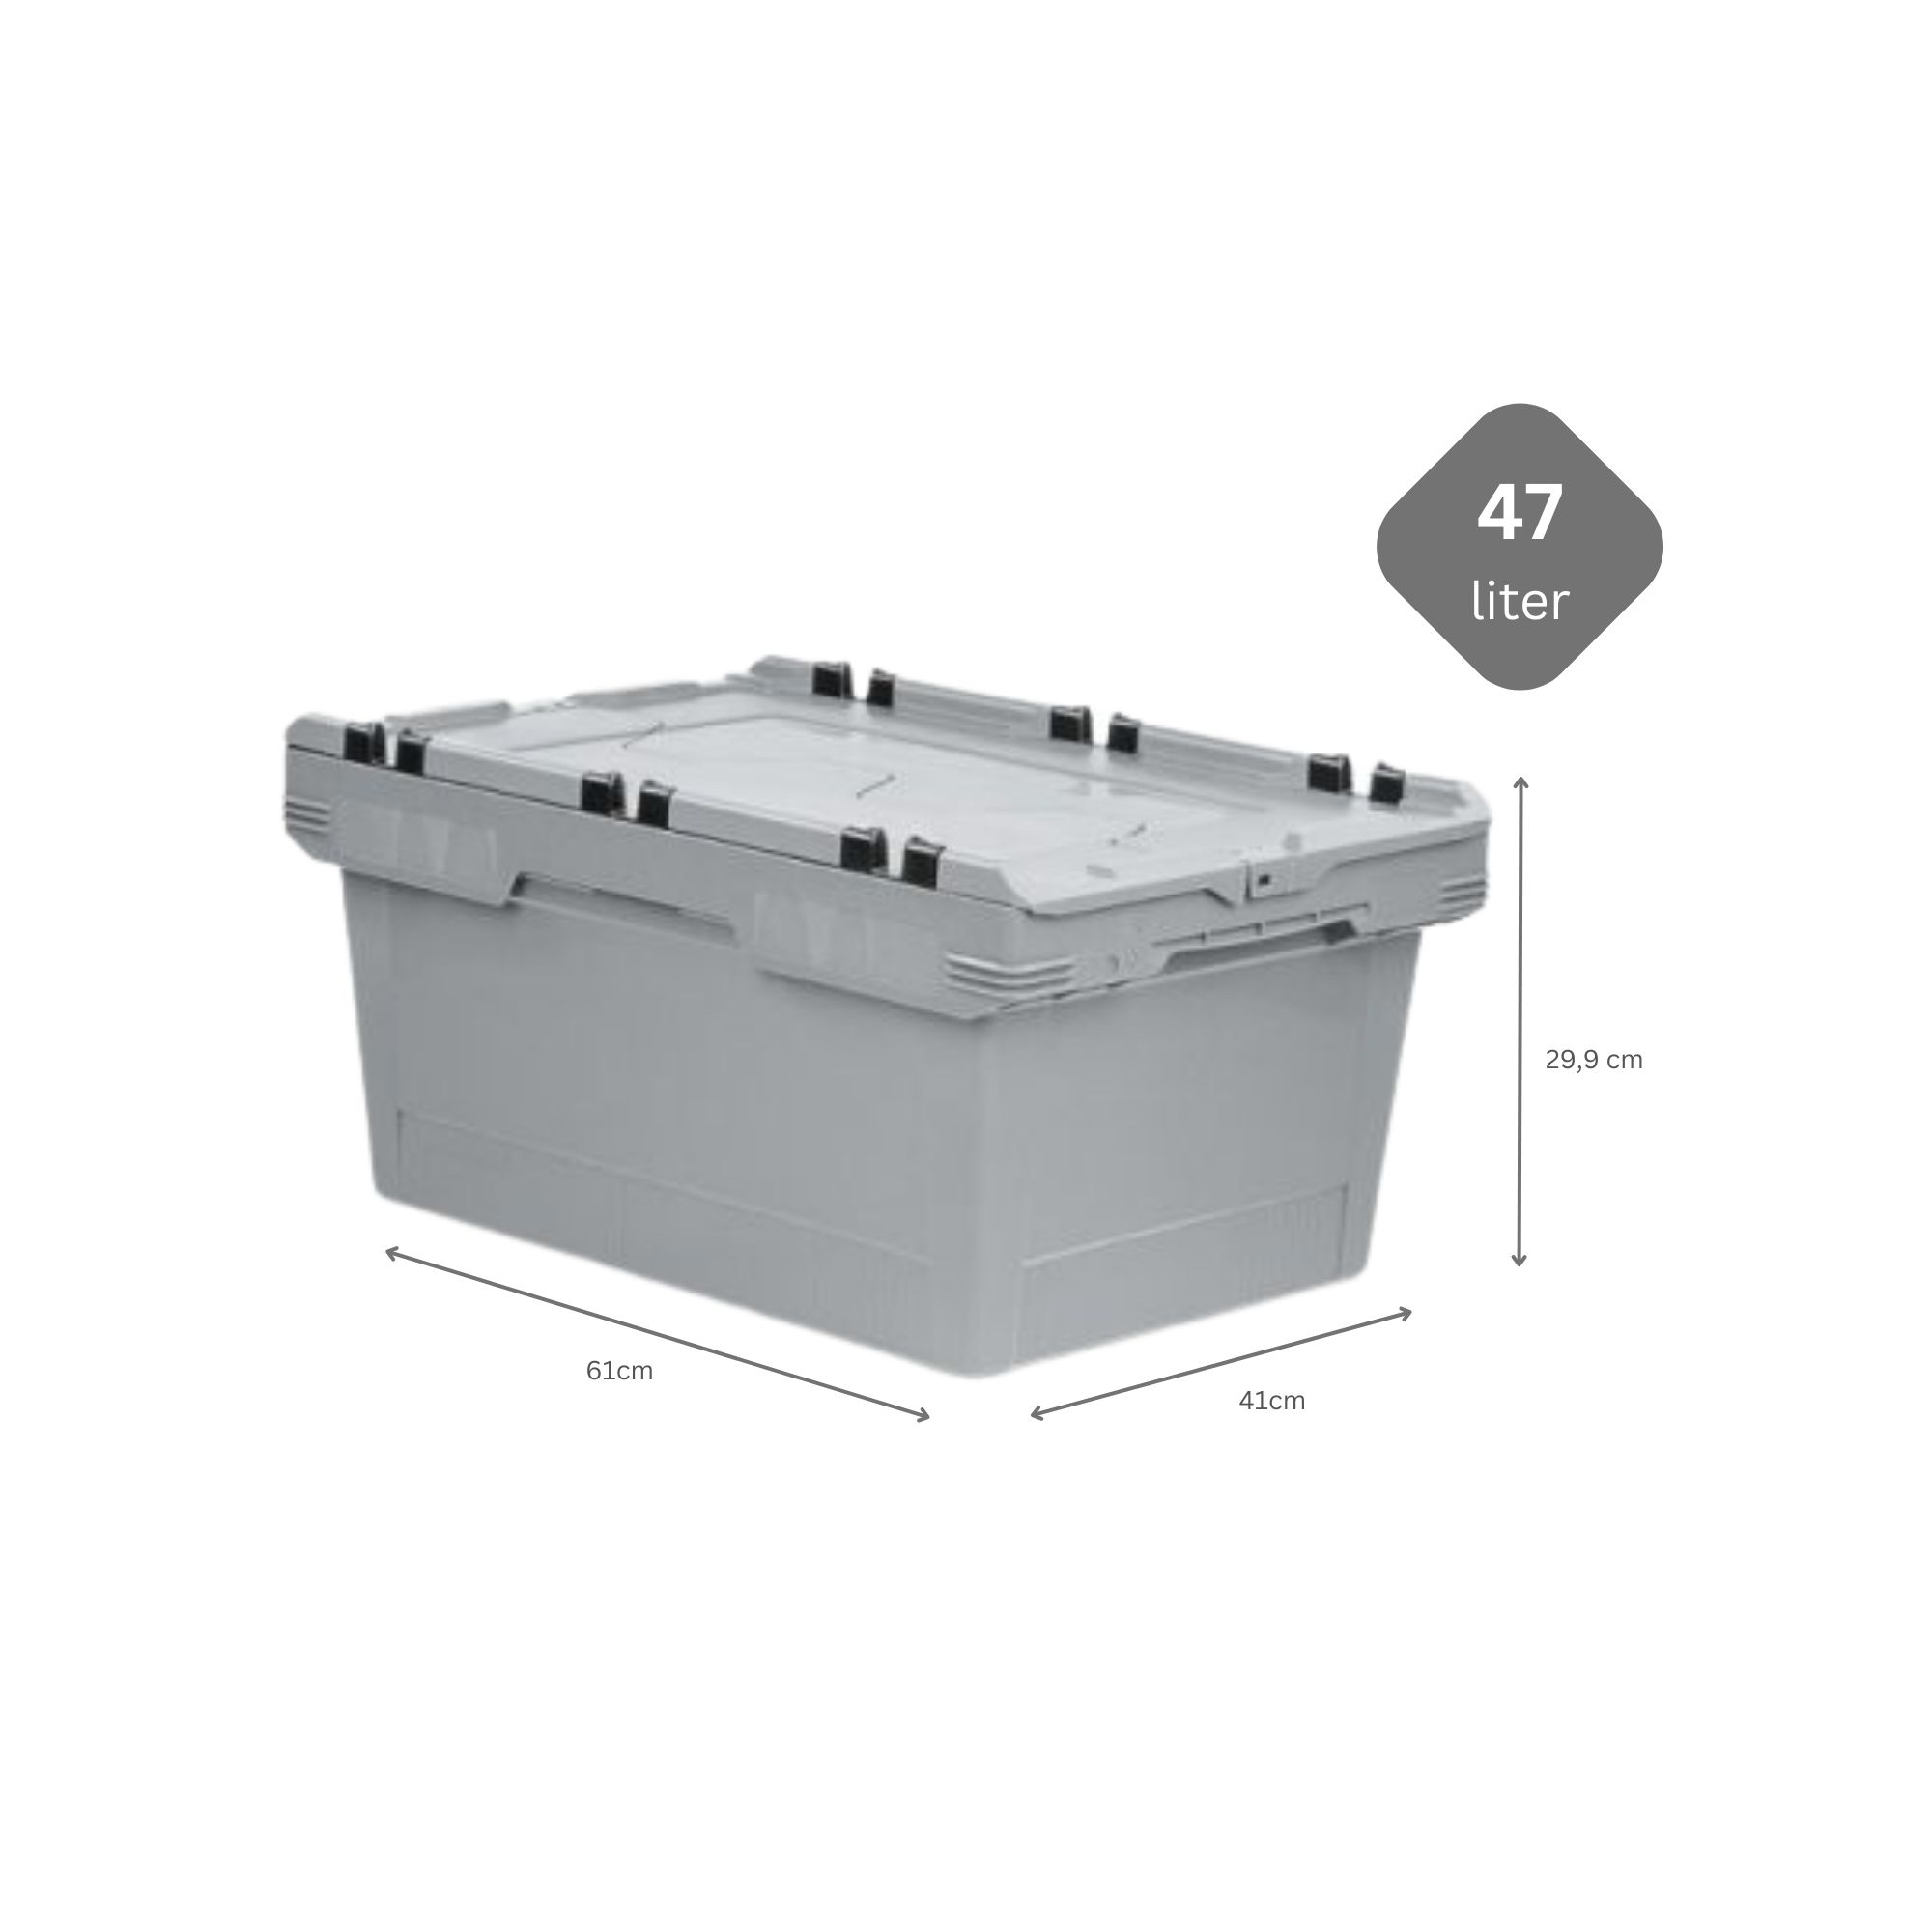 Conical Mehrweg-Stapelbehälter mit Krokodildeckel Grau | HxBxT 29,9x41x61cm | 47 Liter | Lagerbox Eurobox Transportbox Transportbehälter Stapelbehälter